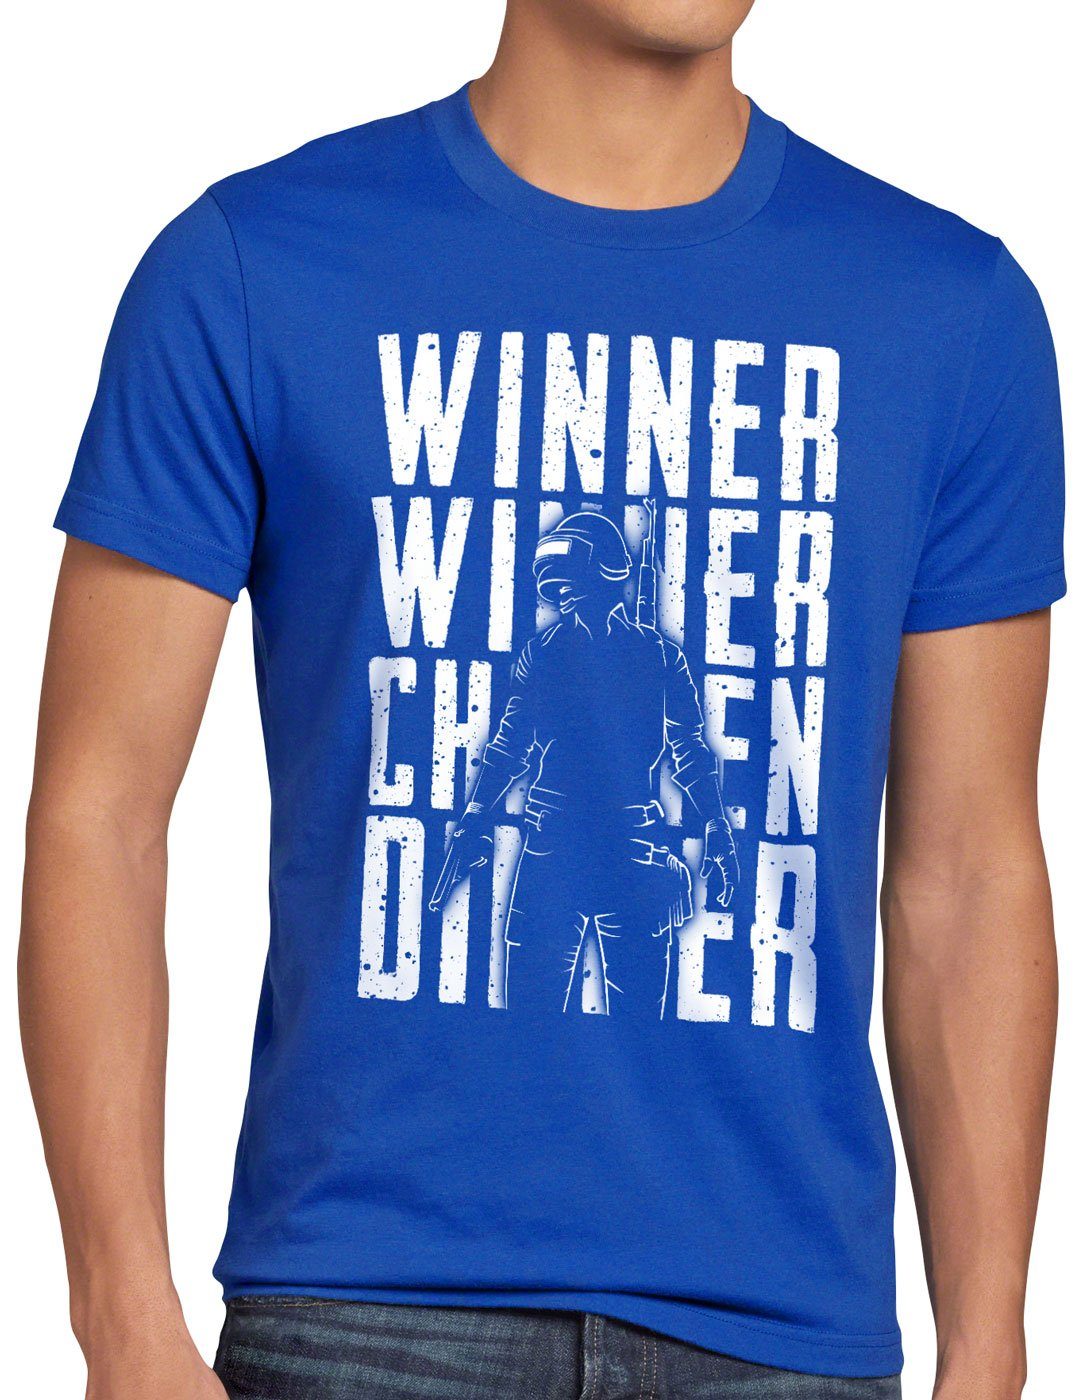 Dinner multiplayer blau Herren Winner pvp style3 T-Shirt Print-Shirt Chicken Winner